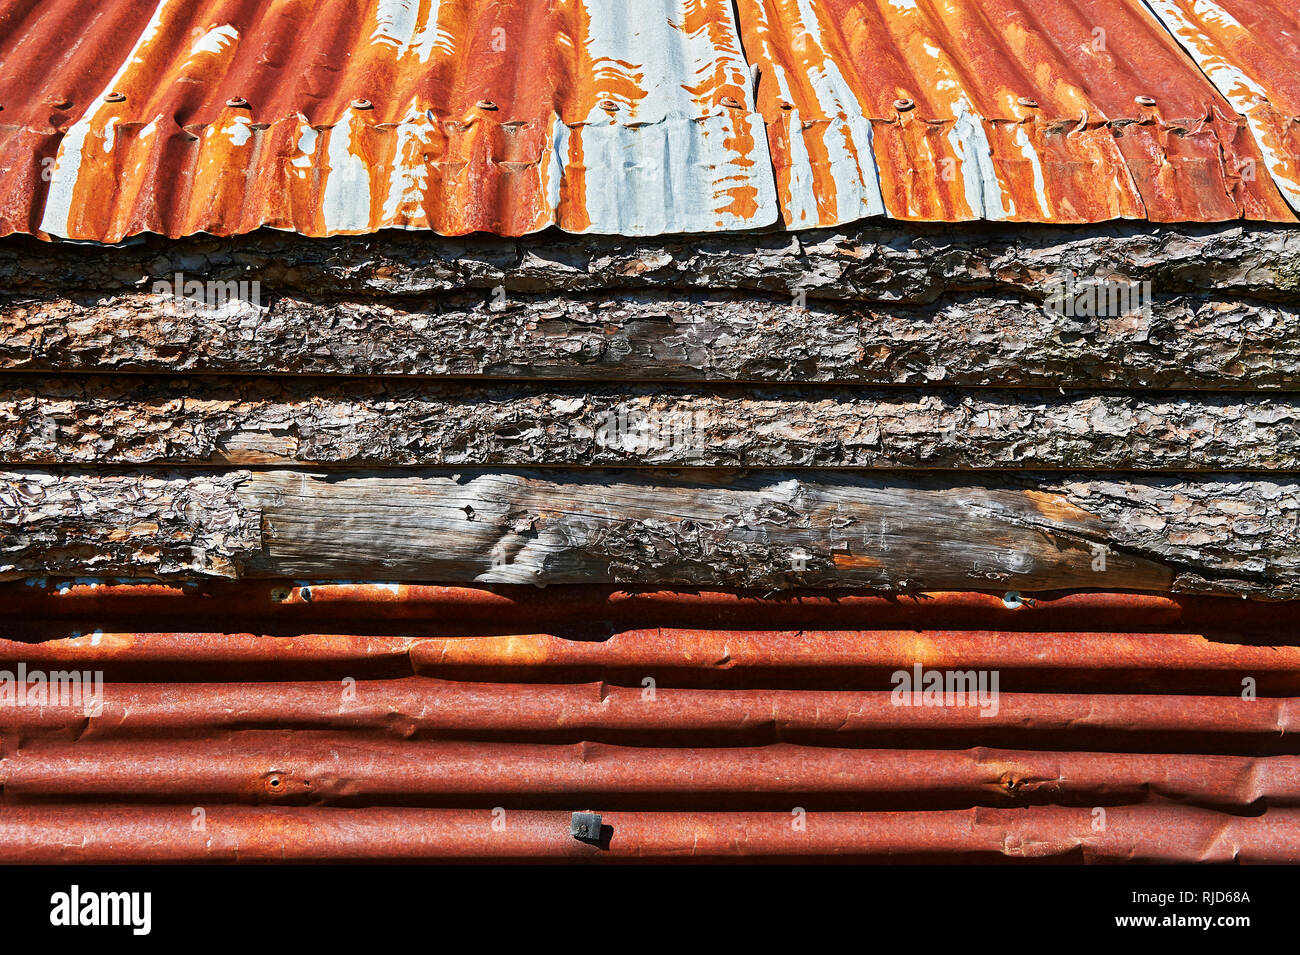 Techado de hoja de metal oxidado y madera de pino; los materiales utilizados en la construcción de edificios más barato en el norte de Luzón de Filipinas Foto de stock